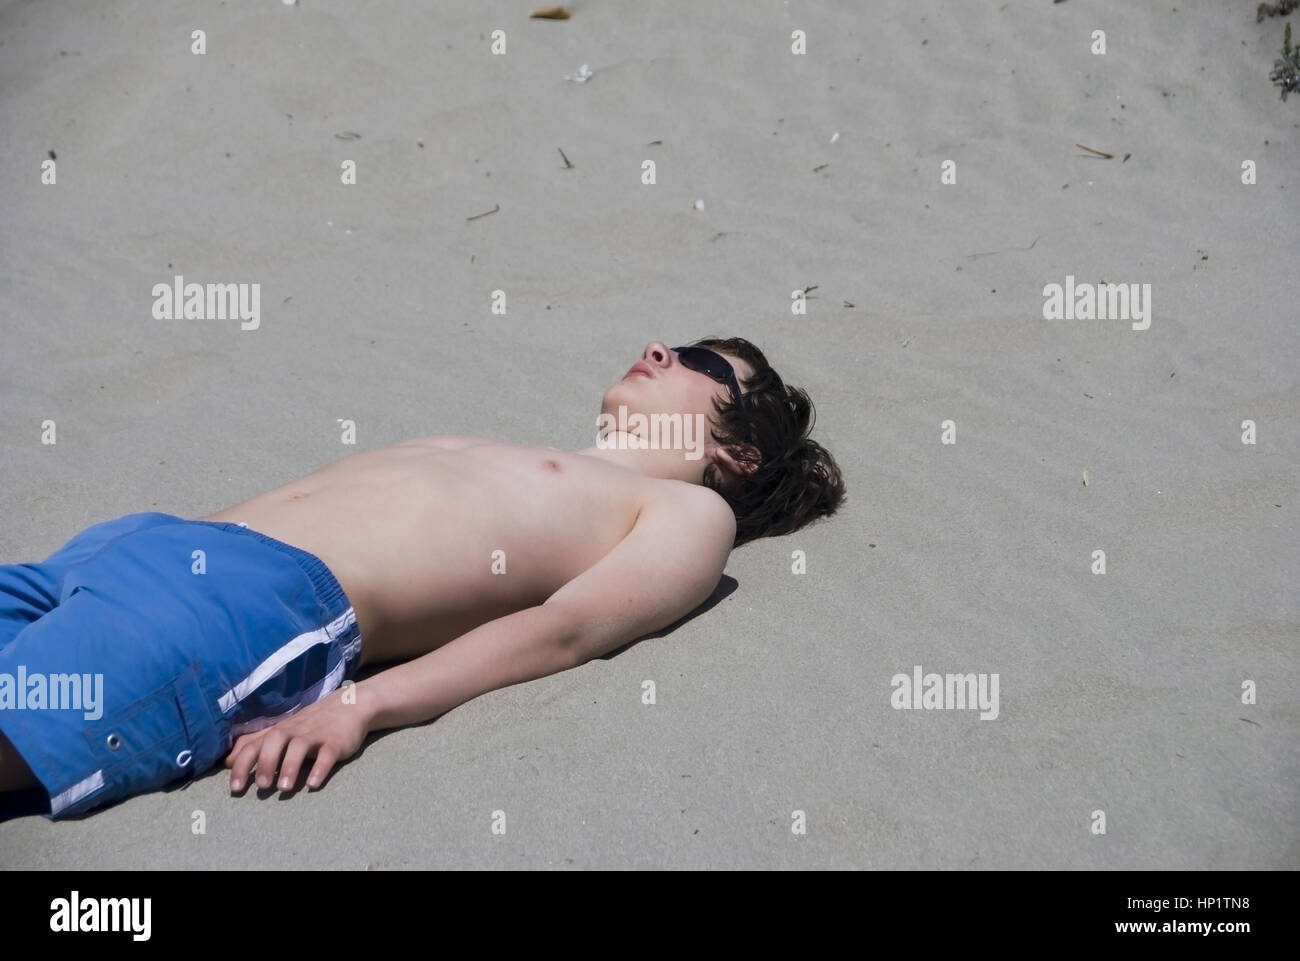 Jugendlicher liegt im Sand am Strand und sonnt sich - teenager suns in spiaggia Foto Stock